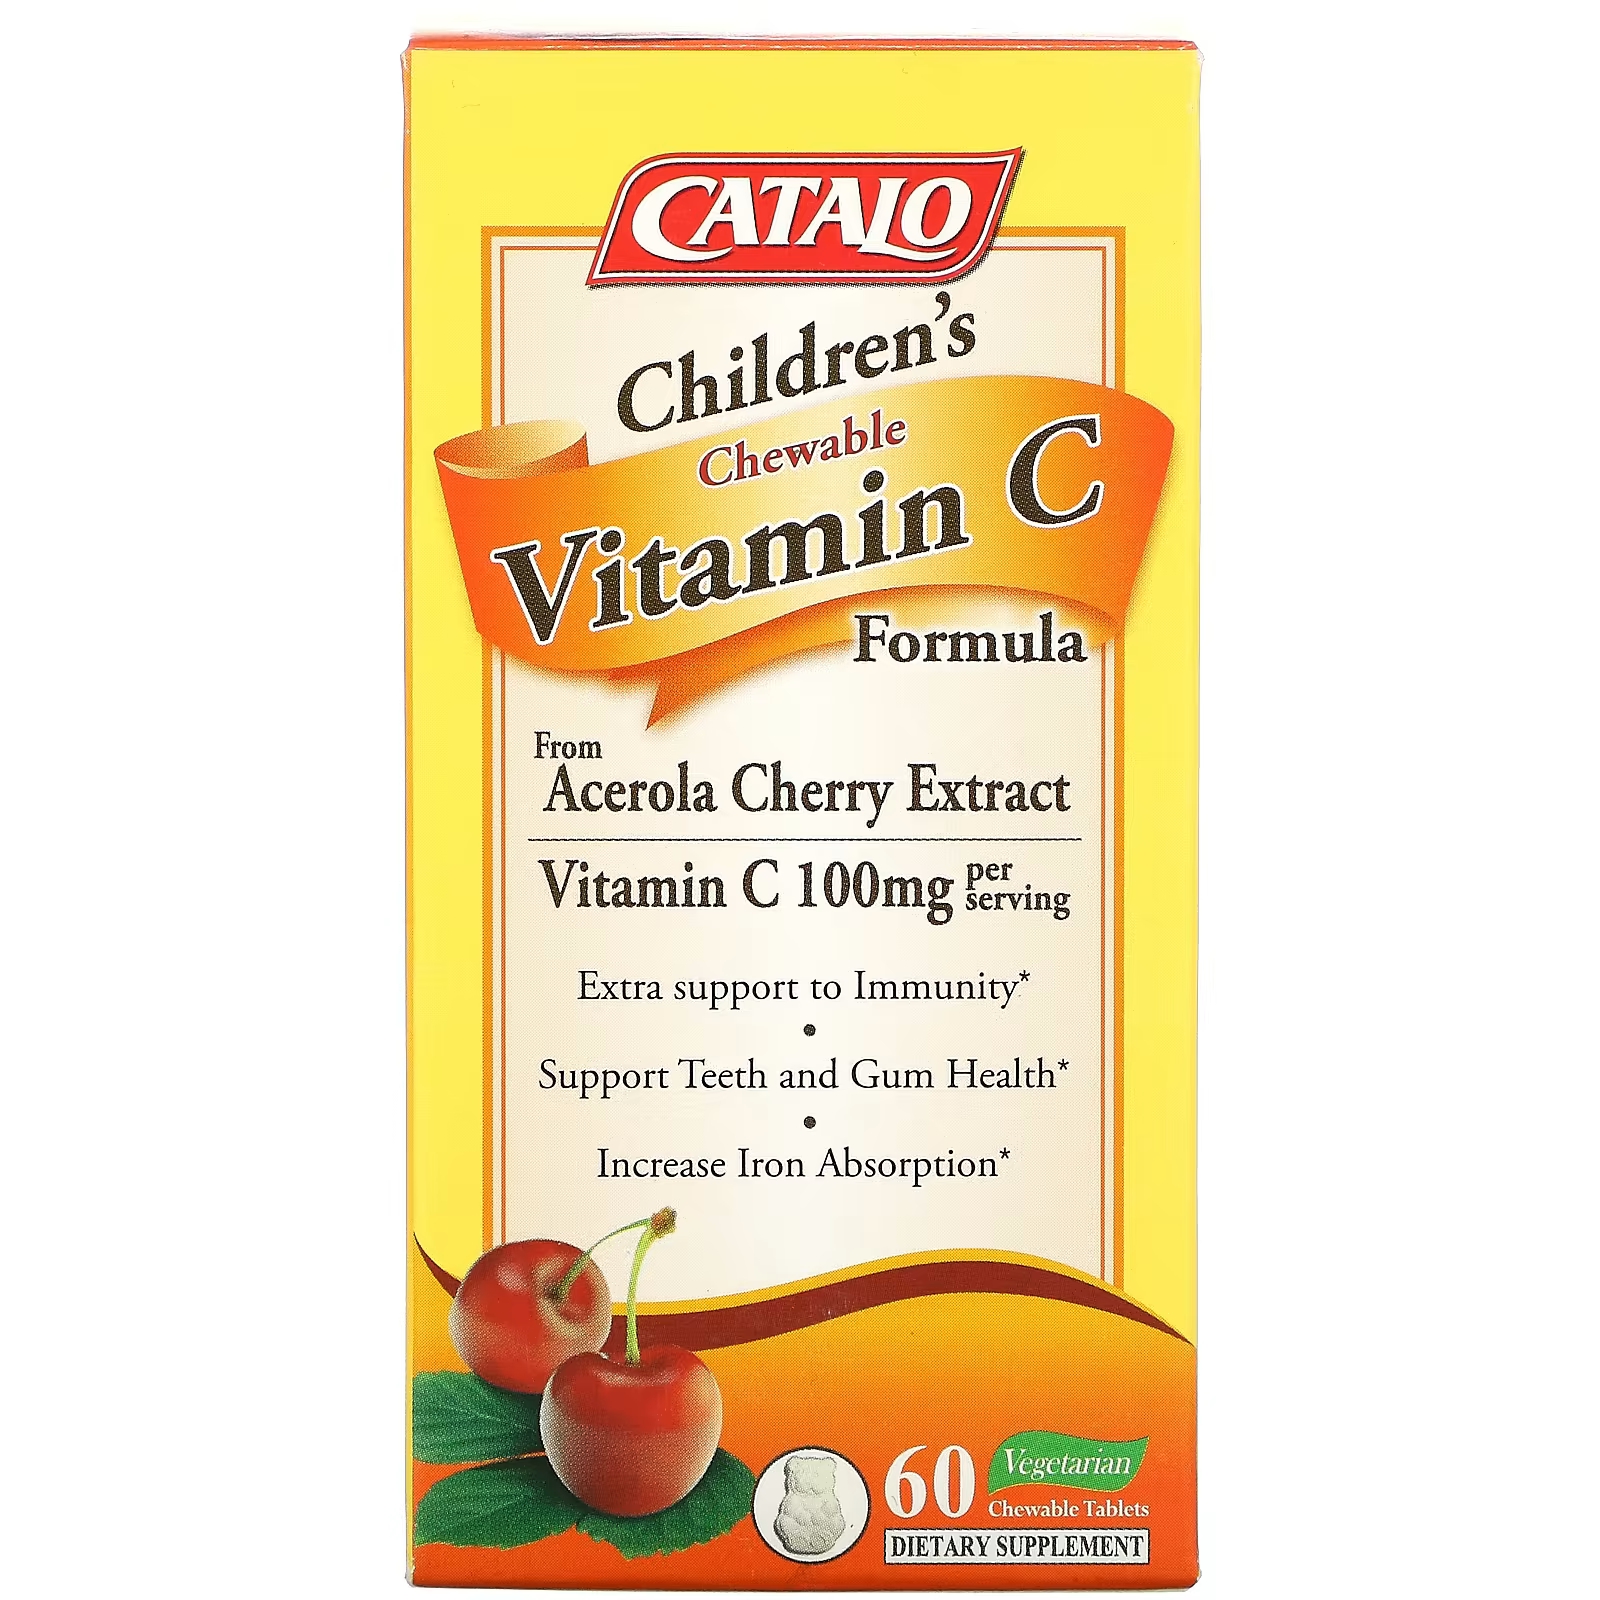 Пищевая добавка с витамином C для детей Catalo Naturals 100 мг, 60 таблеток (50 мг в одной таблетке) комплекс эхинацеи витамина с и zn здравсити для укрепления иммунитета 10 шт